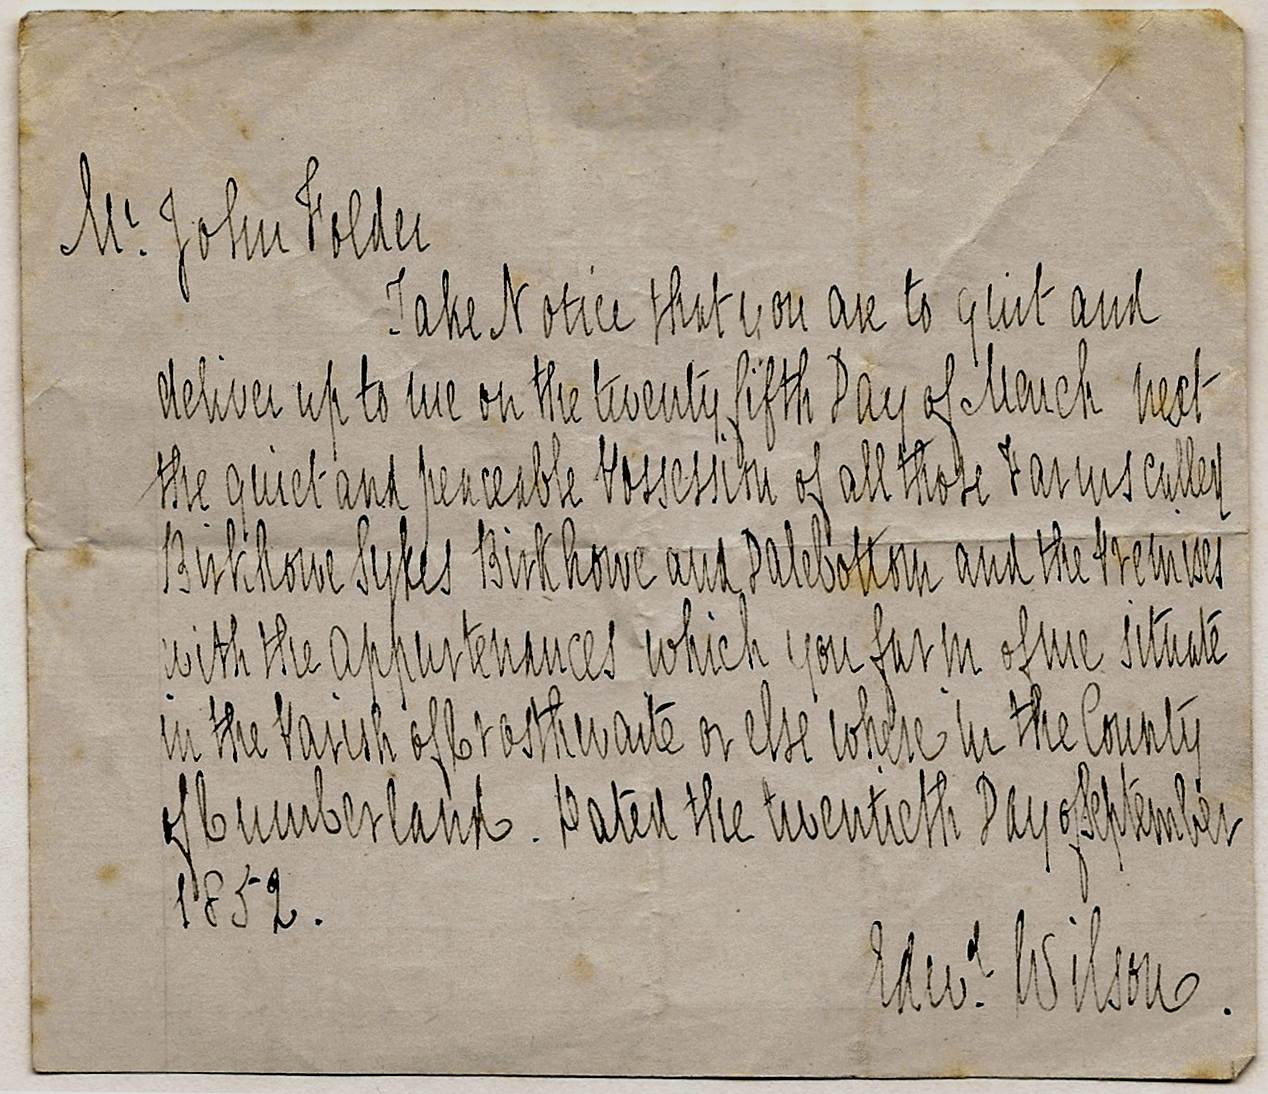 Letter from Edward Wilson to John Folder